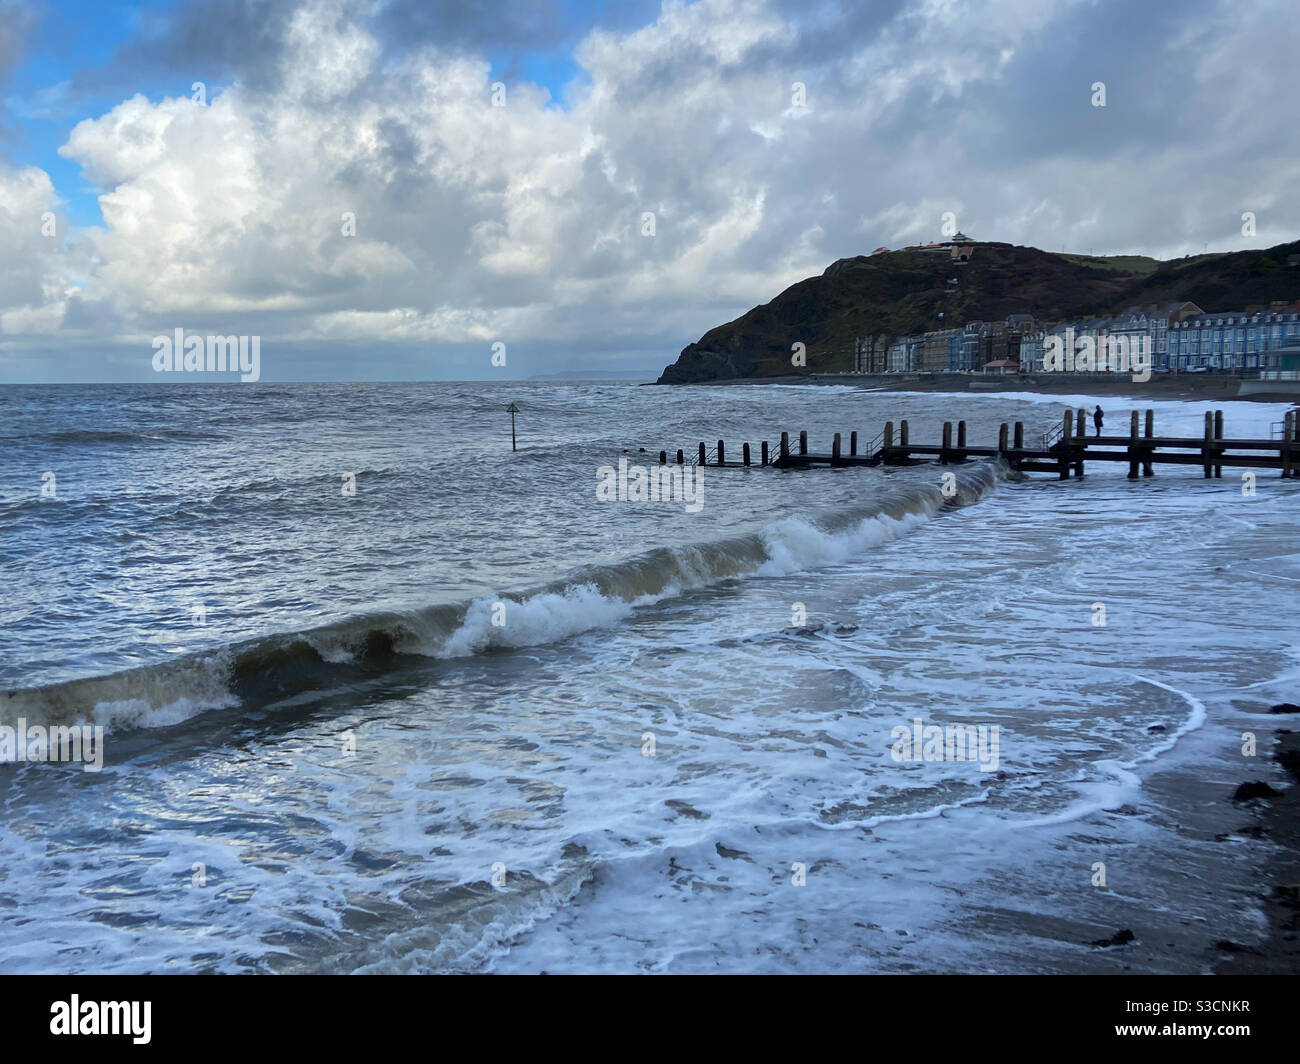 Aberystwyth, Galles occidentale, Regno Unito. Giovedì 21 gennaio 2021. Tempo: Una mattina fredda in spiaggia. Calma dopo la tempesta Christoph. Credito fotografico ©️ Rose Voon / Alamy Live News. Foto Stock